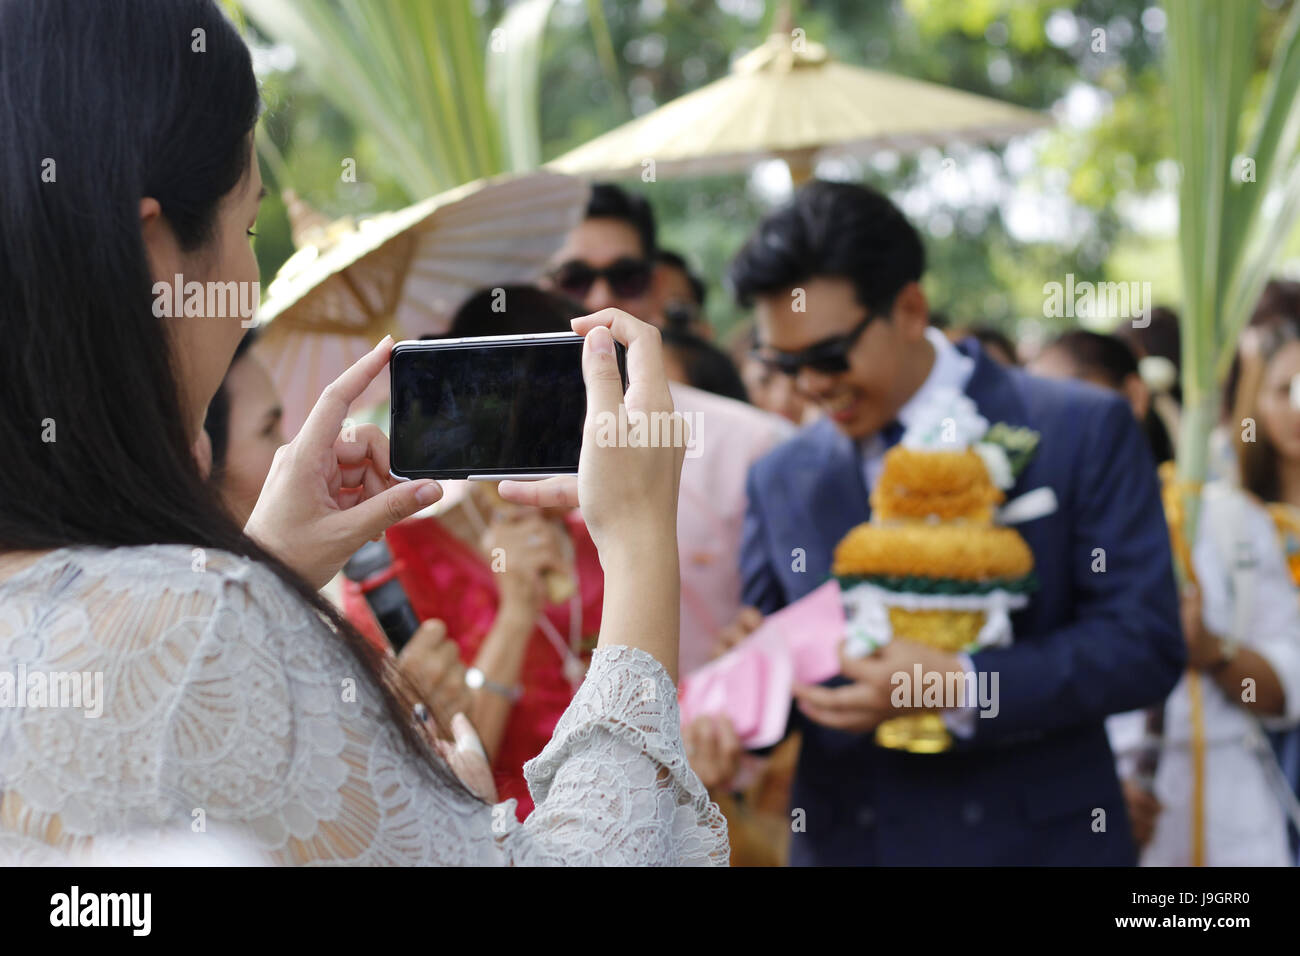 Close up of woman téléphone part prendre une photo de la cérémonie du mariage tradition thaïlandaise Banque D'Images